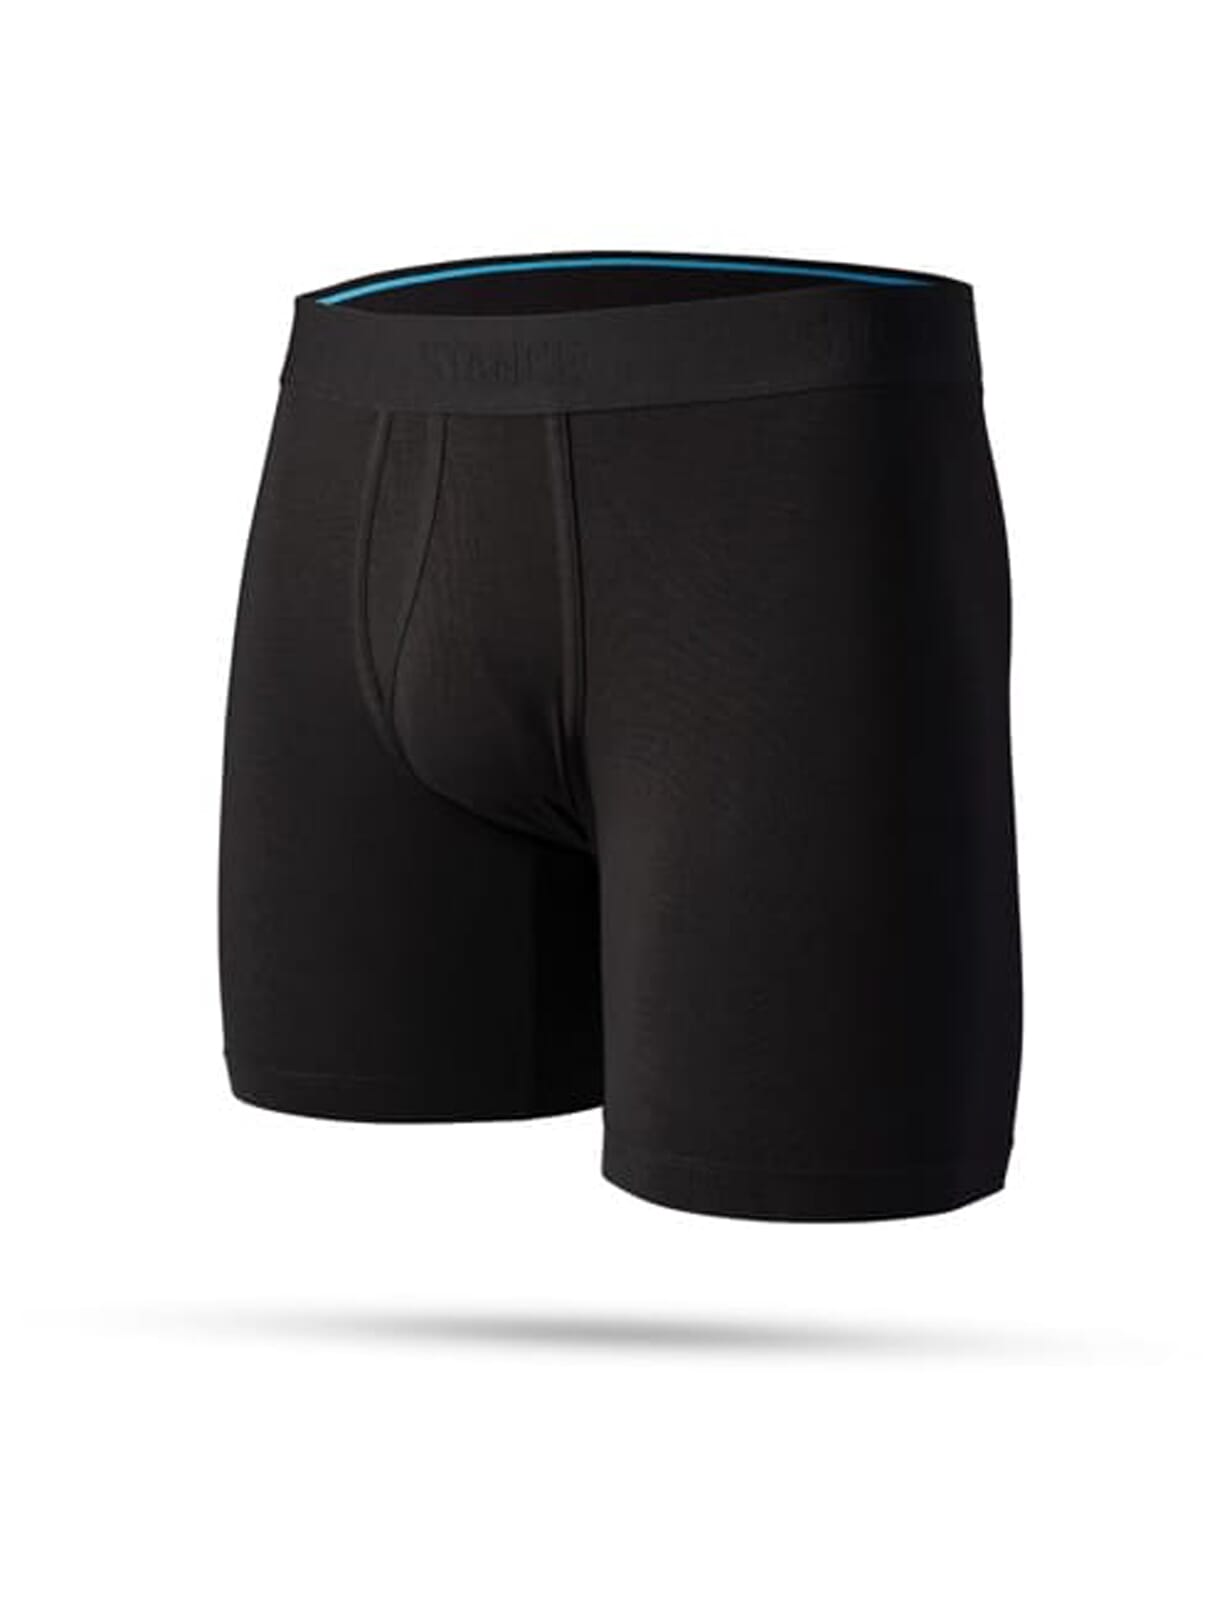 https://assets.hardcloud.com/media/catalog/product/s/t/stance-regulation-boxer-brief-underwear-black-m801a20reg-blk-b_dlwvvrp57vnpsjan.jpg